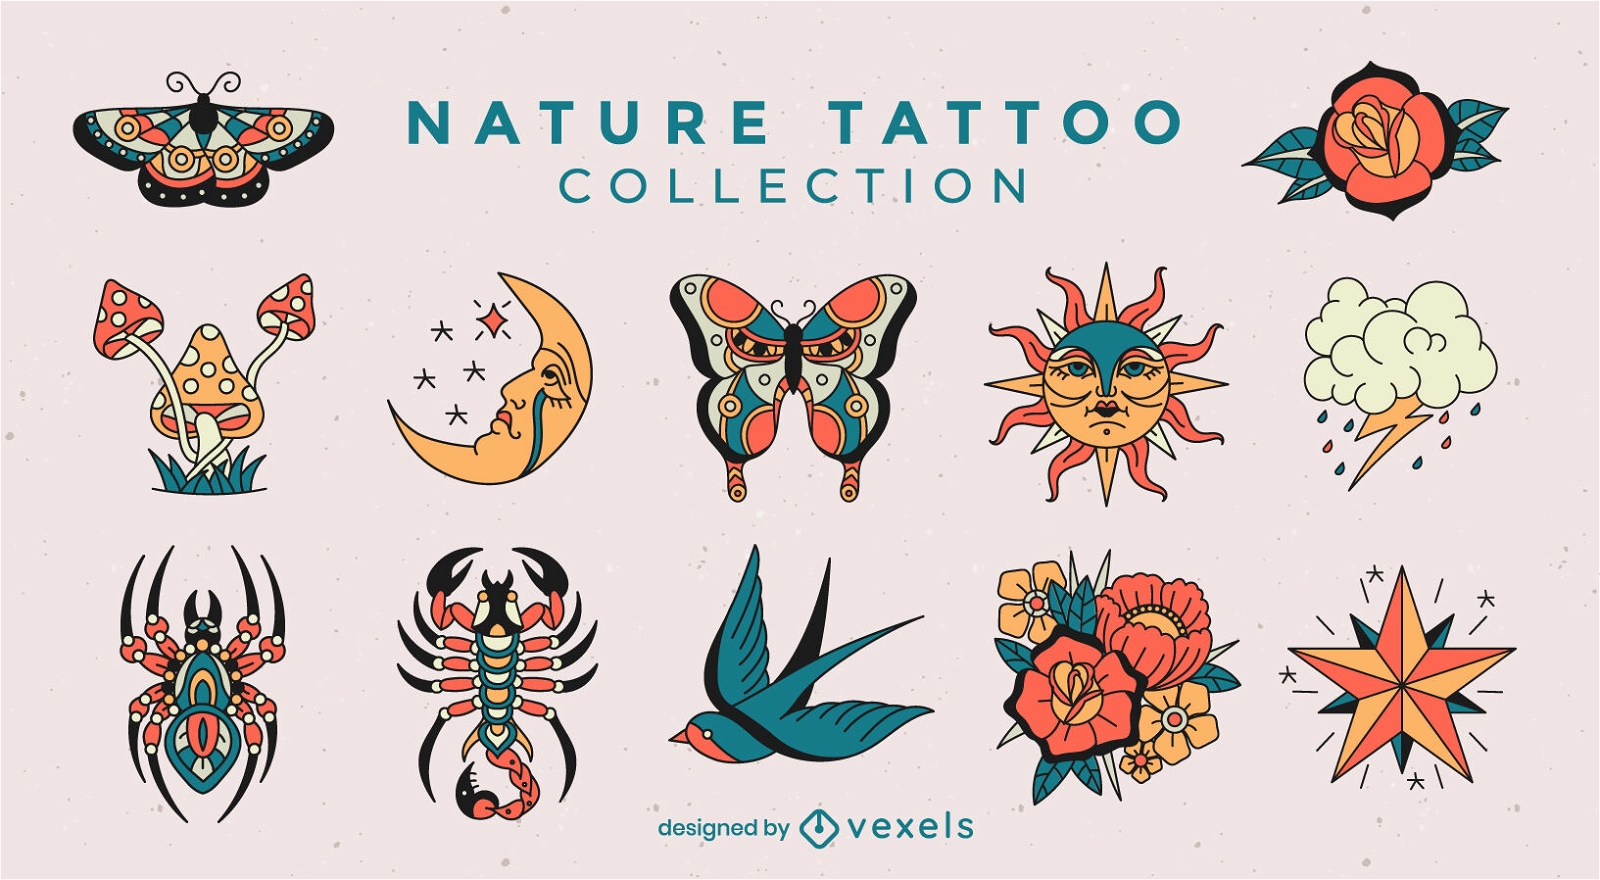 Elementos da natureza definidos em estilo de tatuagem